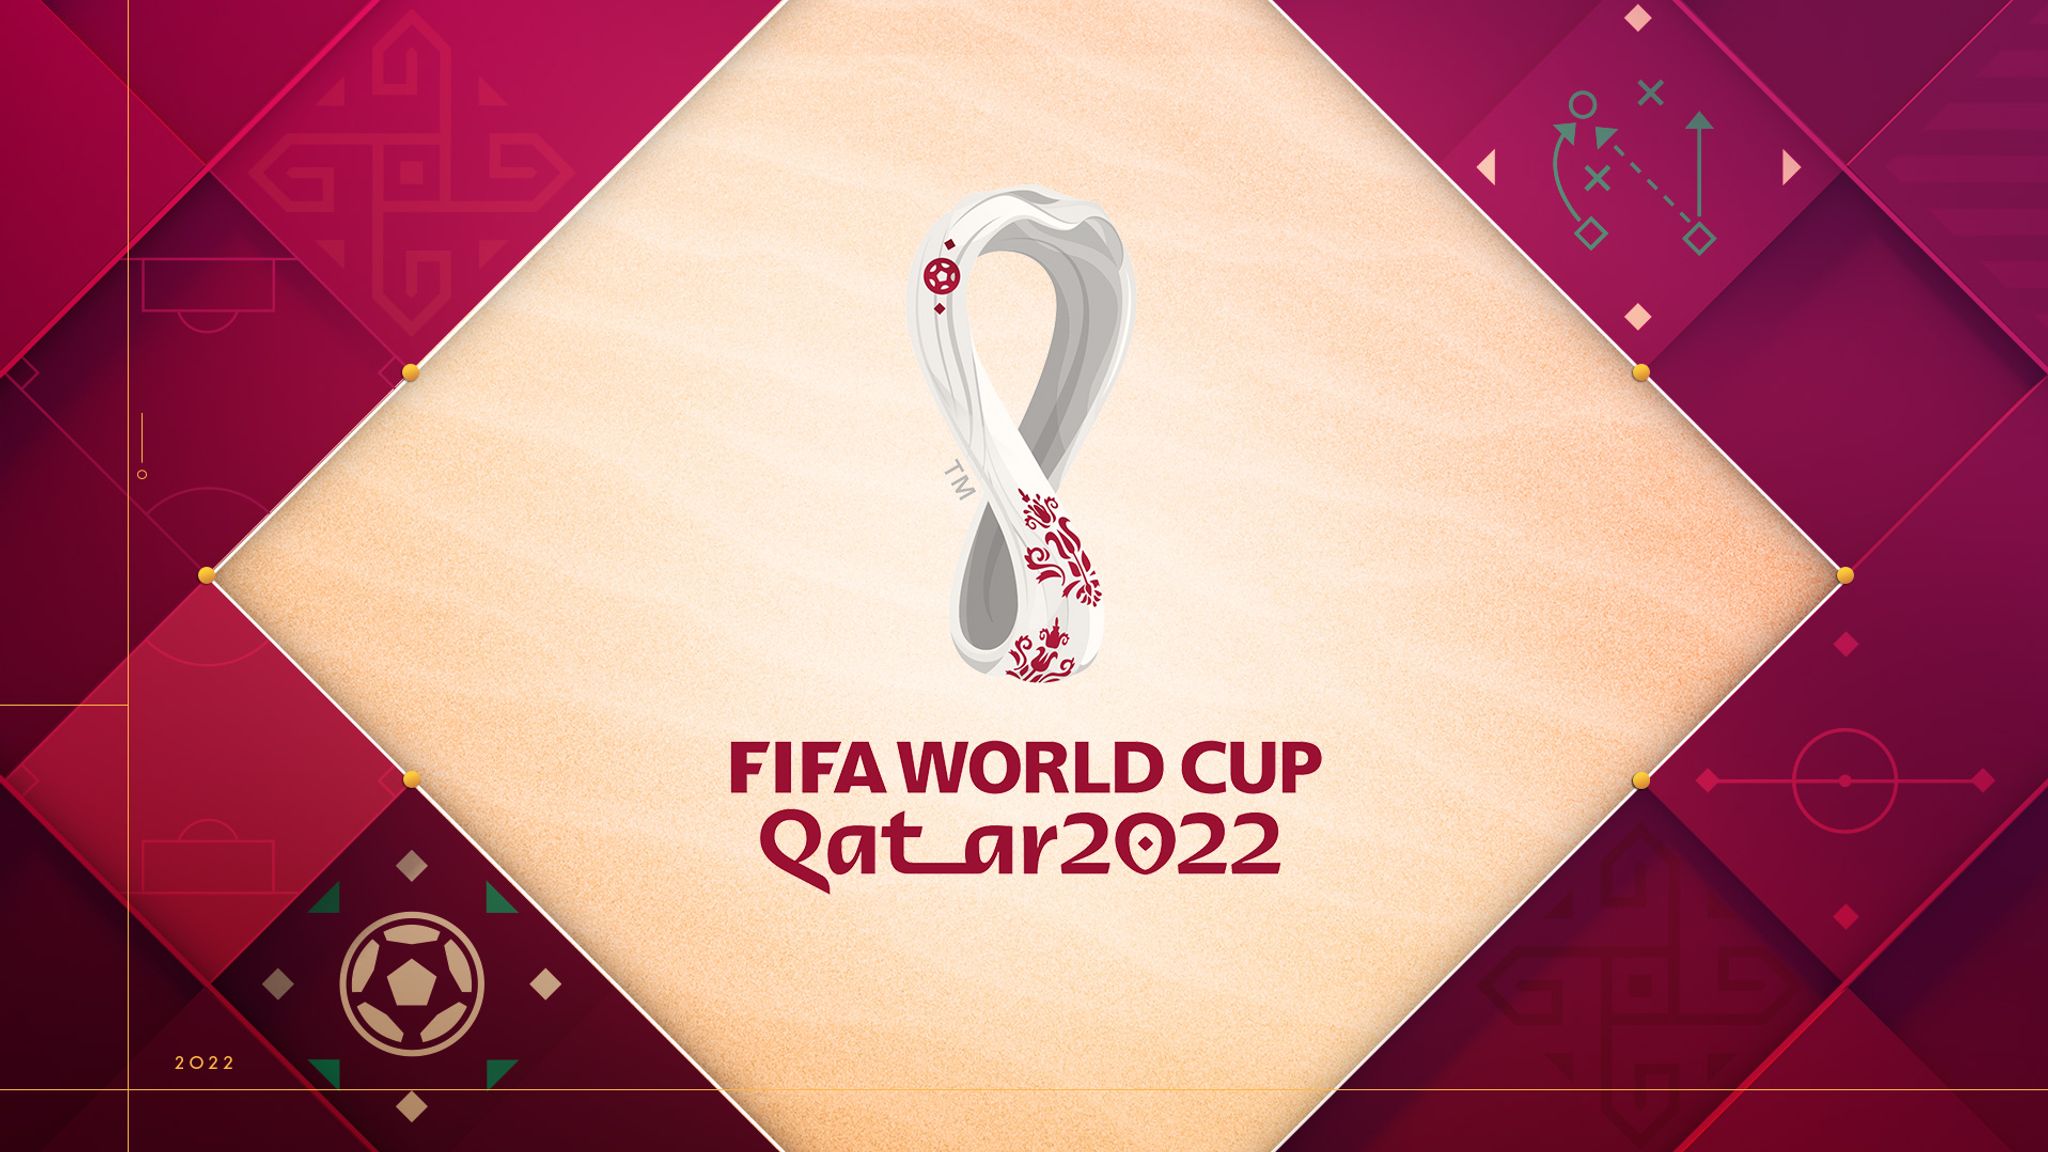 Китайський аналог TikTok буде показувати всі матчі Чемпіонату світу з футболу 2022 безкоштовно